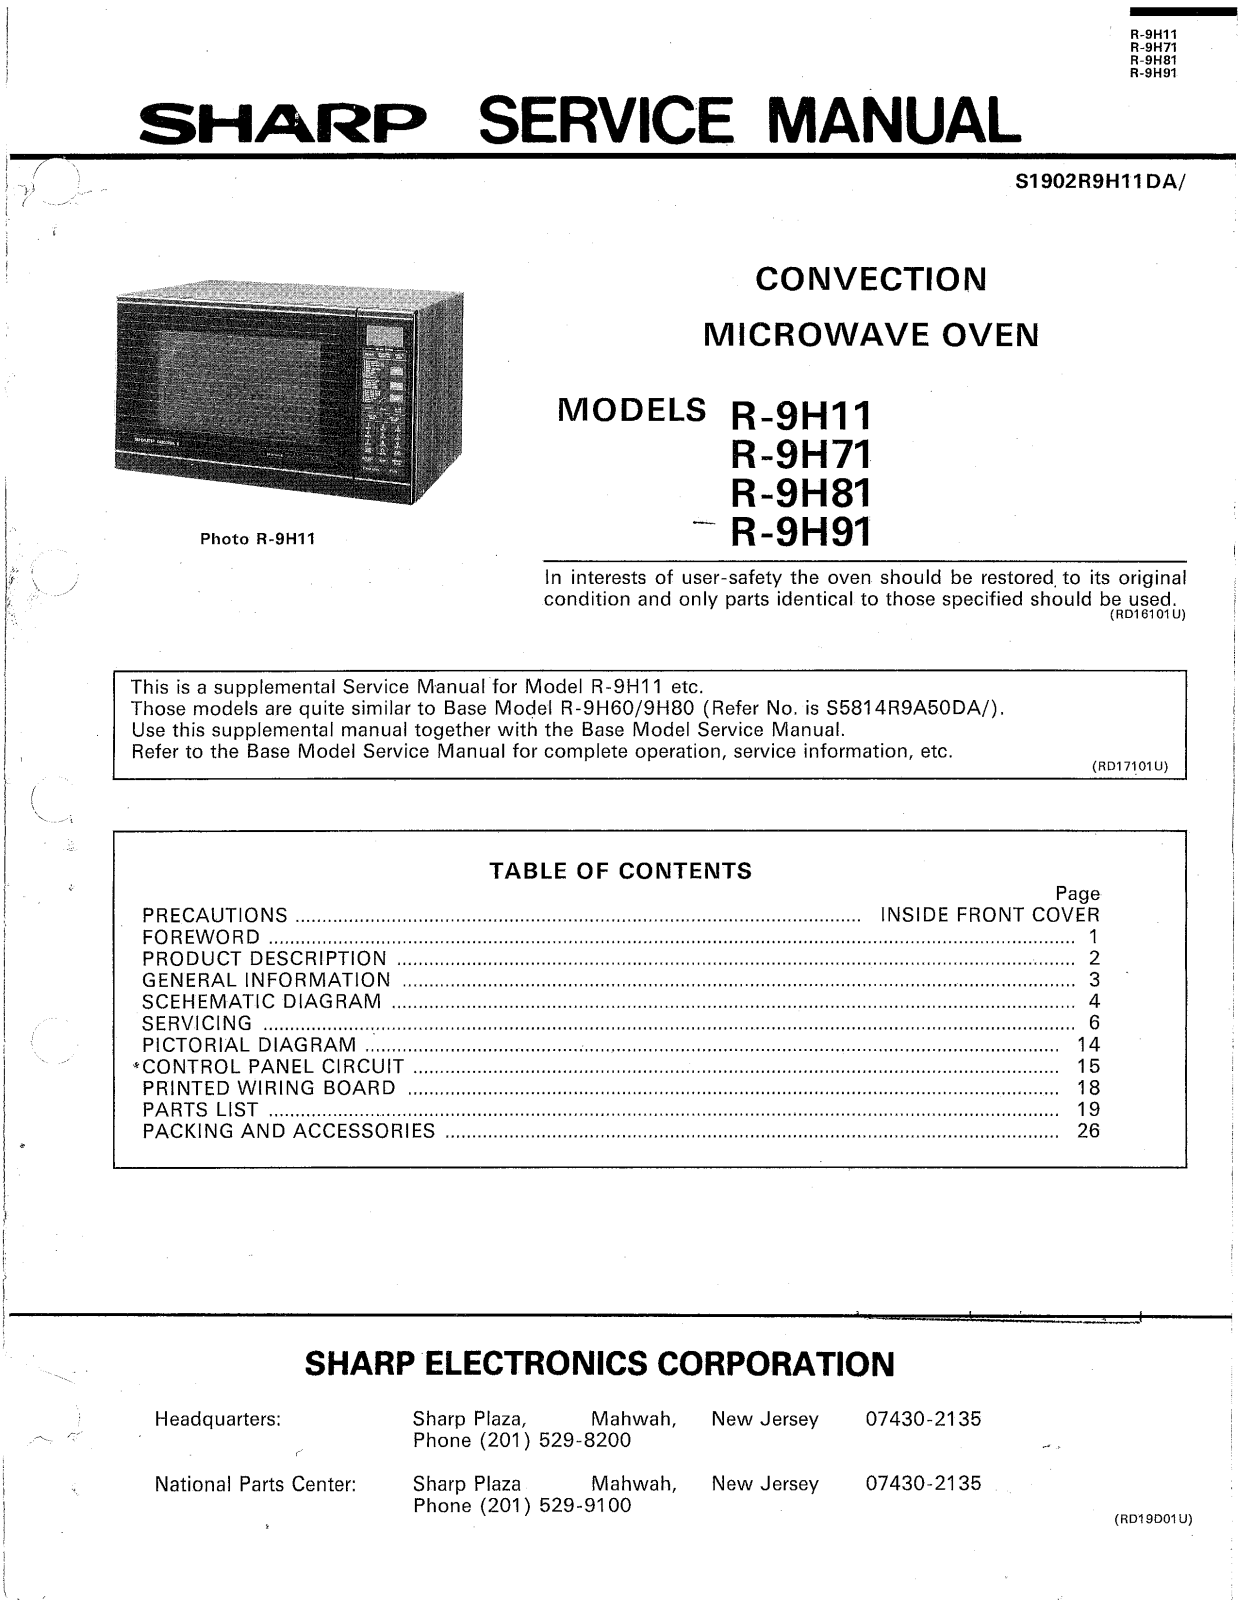 SHARP R9H81, R-9H11, R-9H71, R-9H91. Service Manual